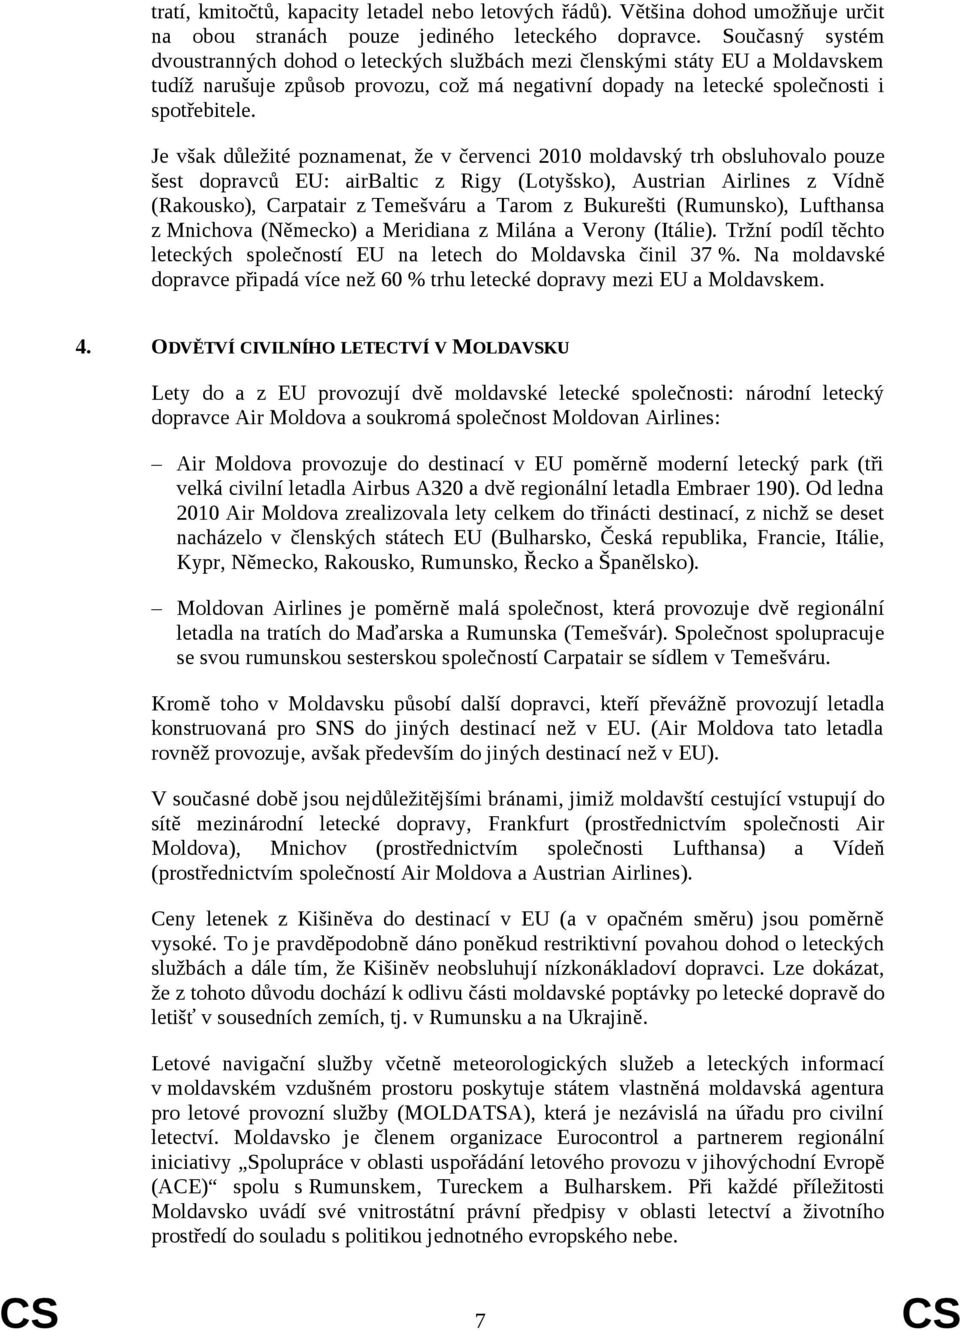 Je však důležité poznamenat, že v červenci 2010 moldavský trh obsluhovalo pouze šest dopravců EU: airbaltic z Rigy (Lotyšsko), Austrian Airlines z Vídně (Rakousko), Carpatair z Temešváru a Tarom z